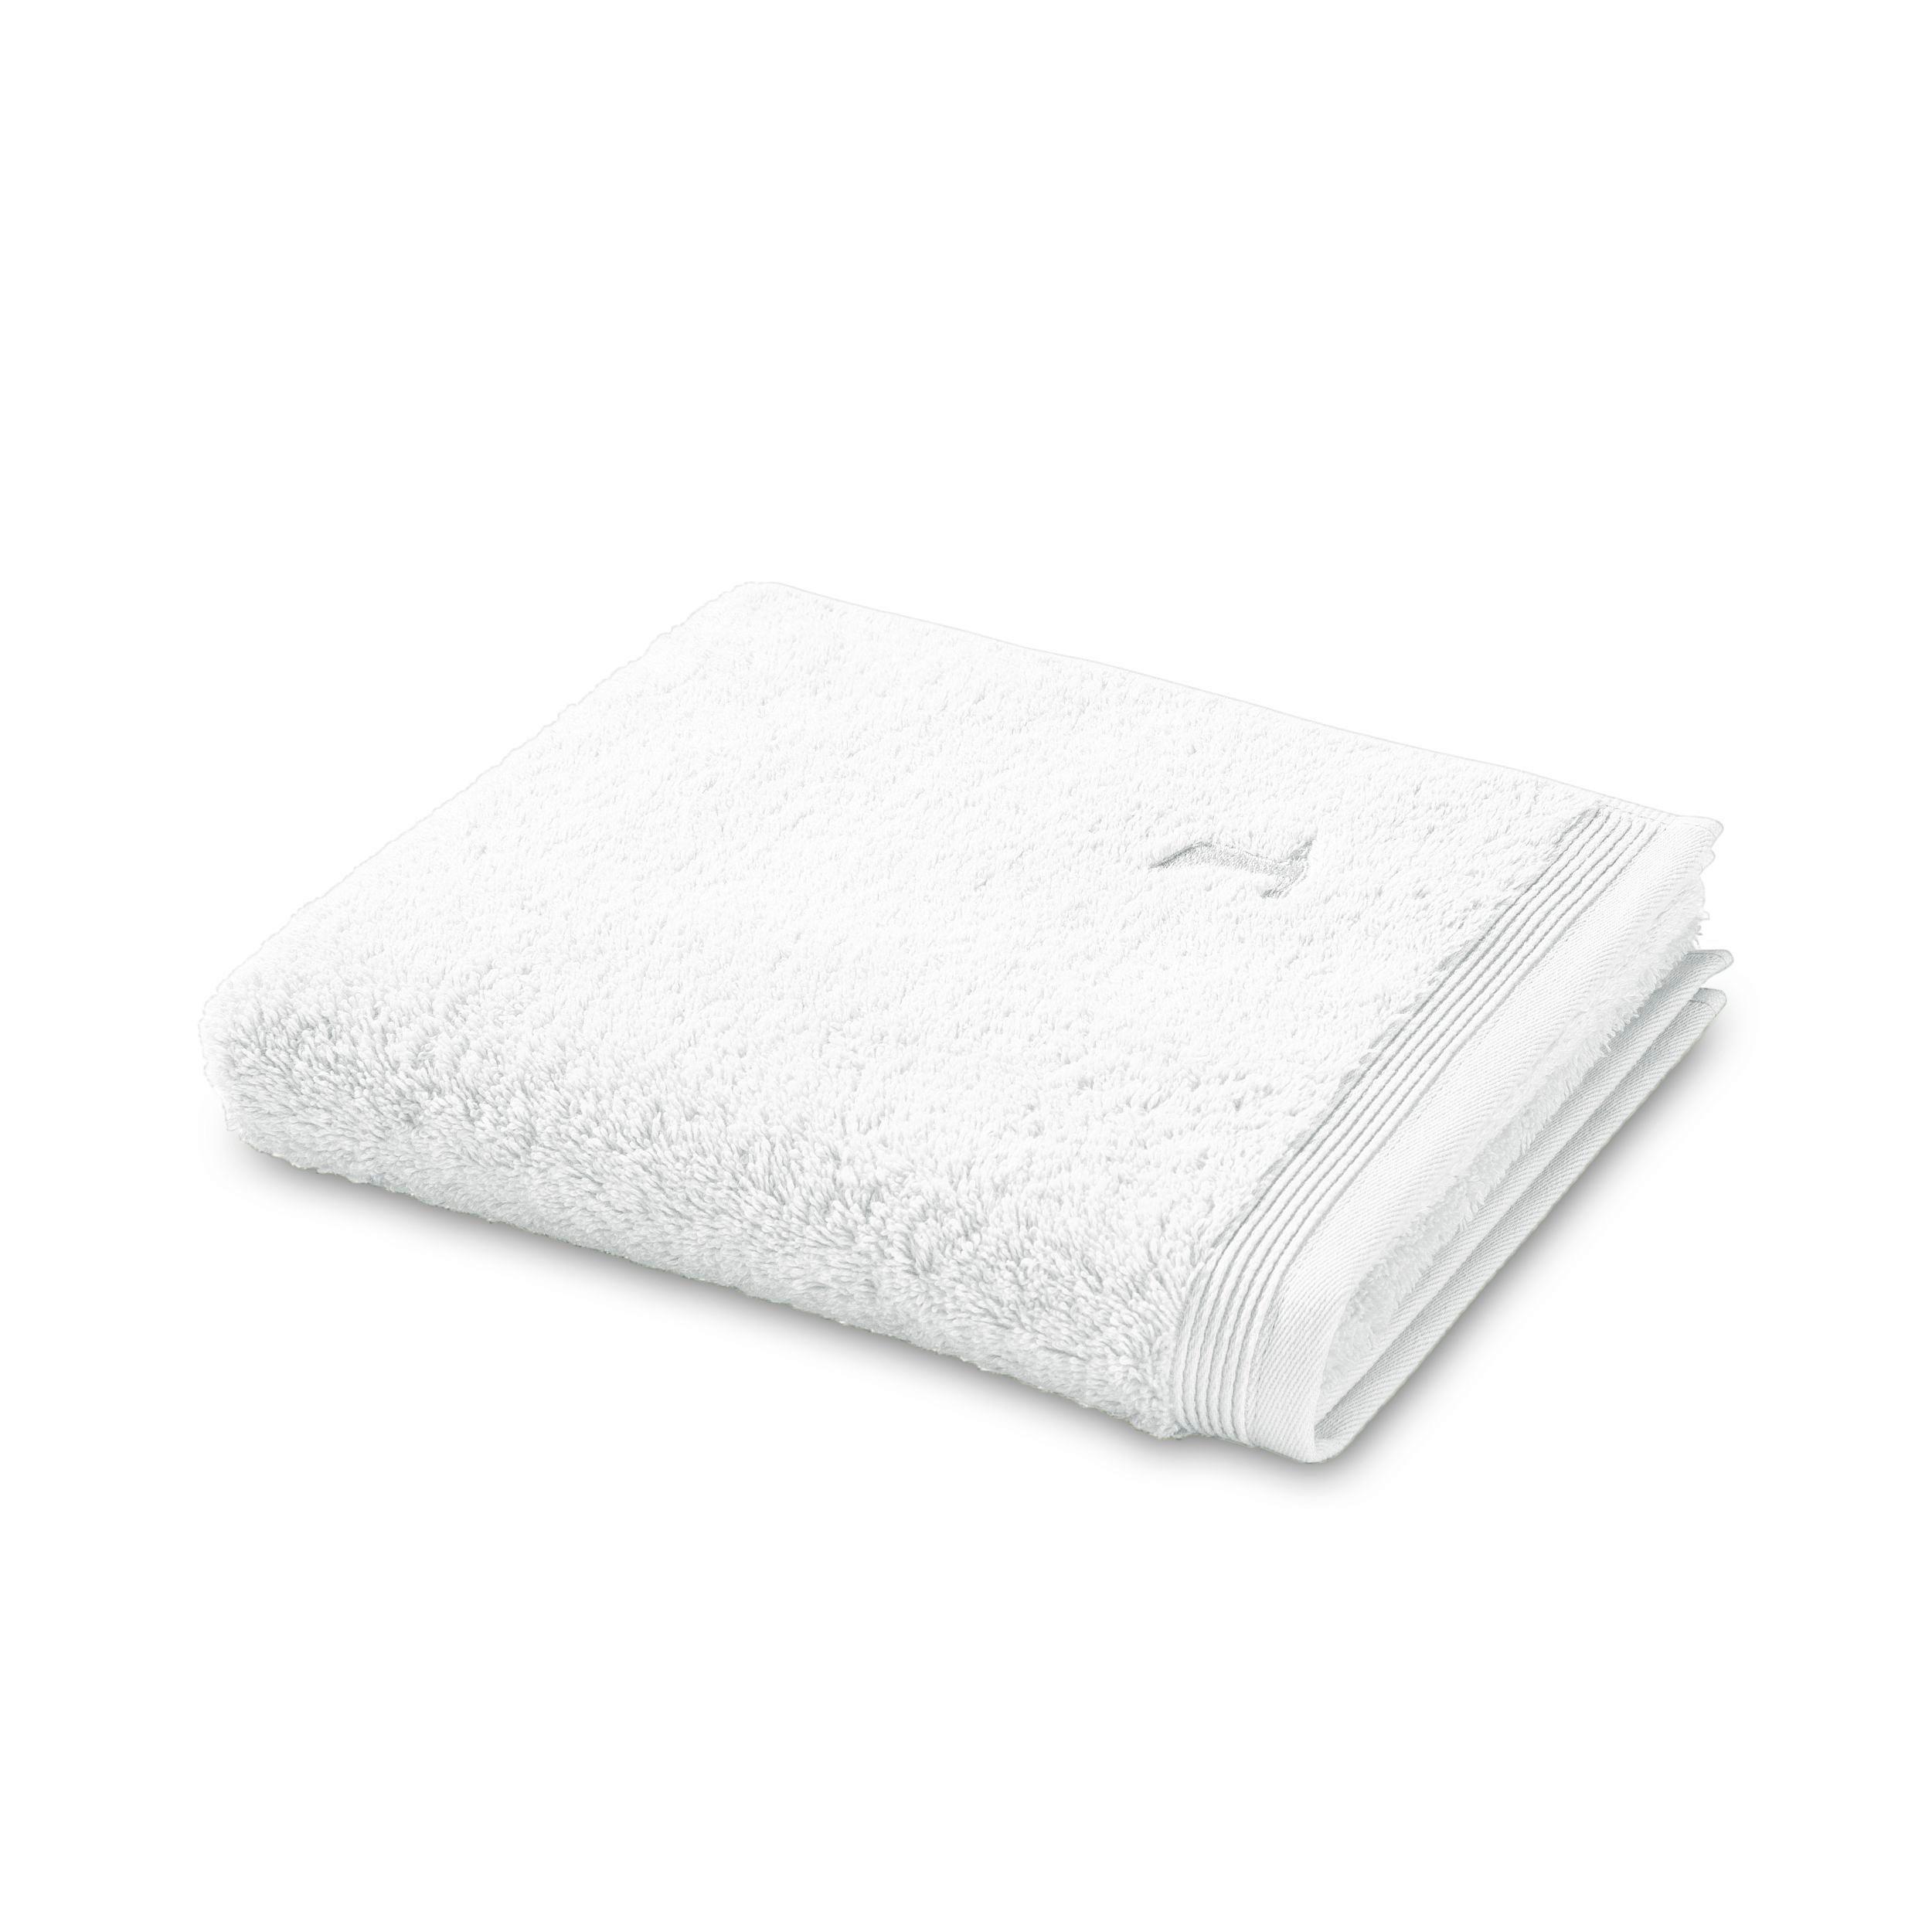 Gästehandtuch Superwuschel Baumwolle 550g/M Weiß 50x100 - Weiß, Basics, Textil (50/100cm) - Moeve